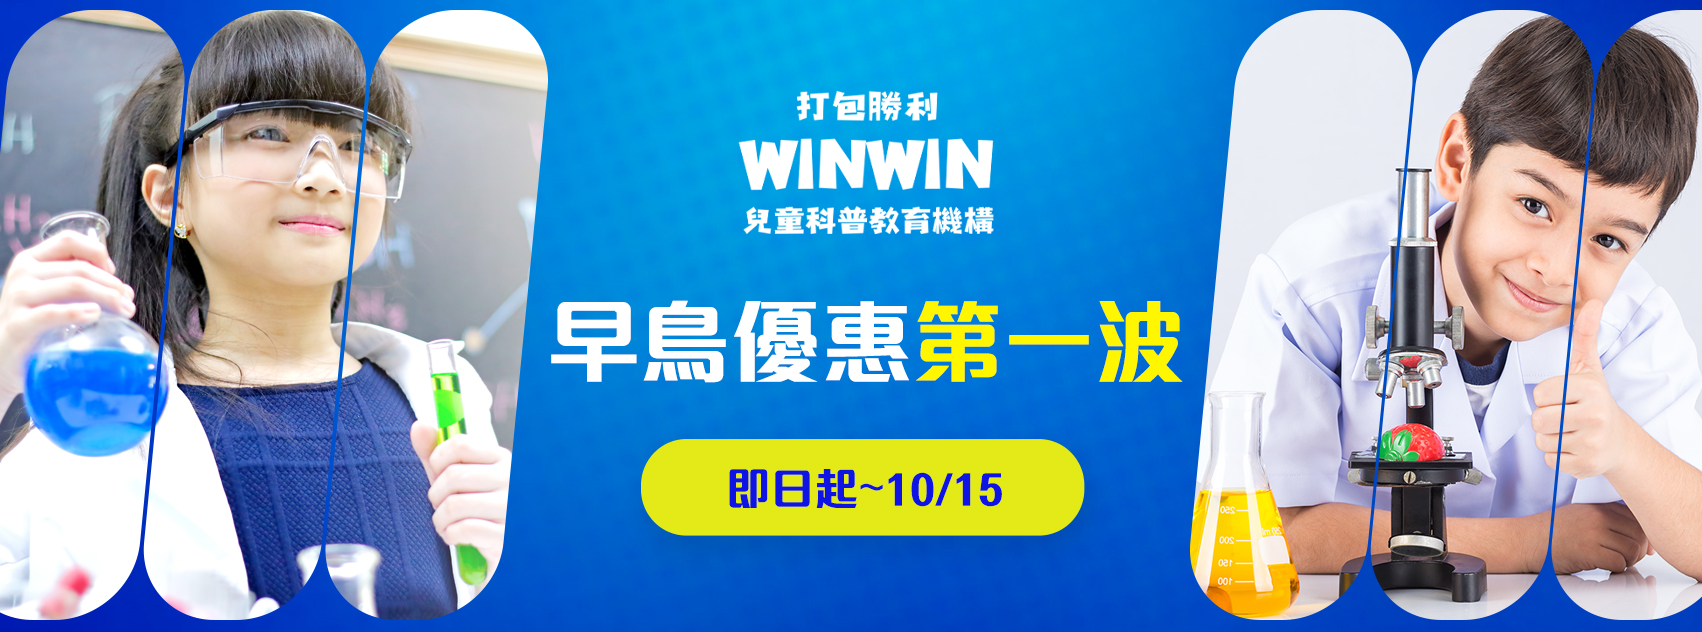 WINWIN打包勝利 兒童科普教育